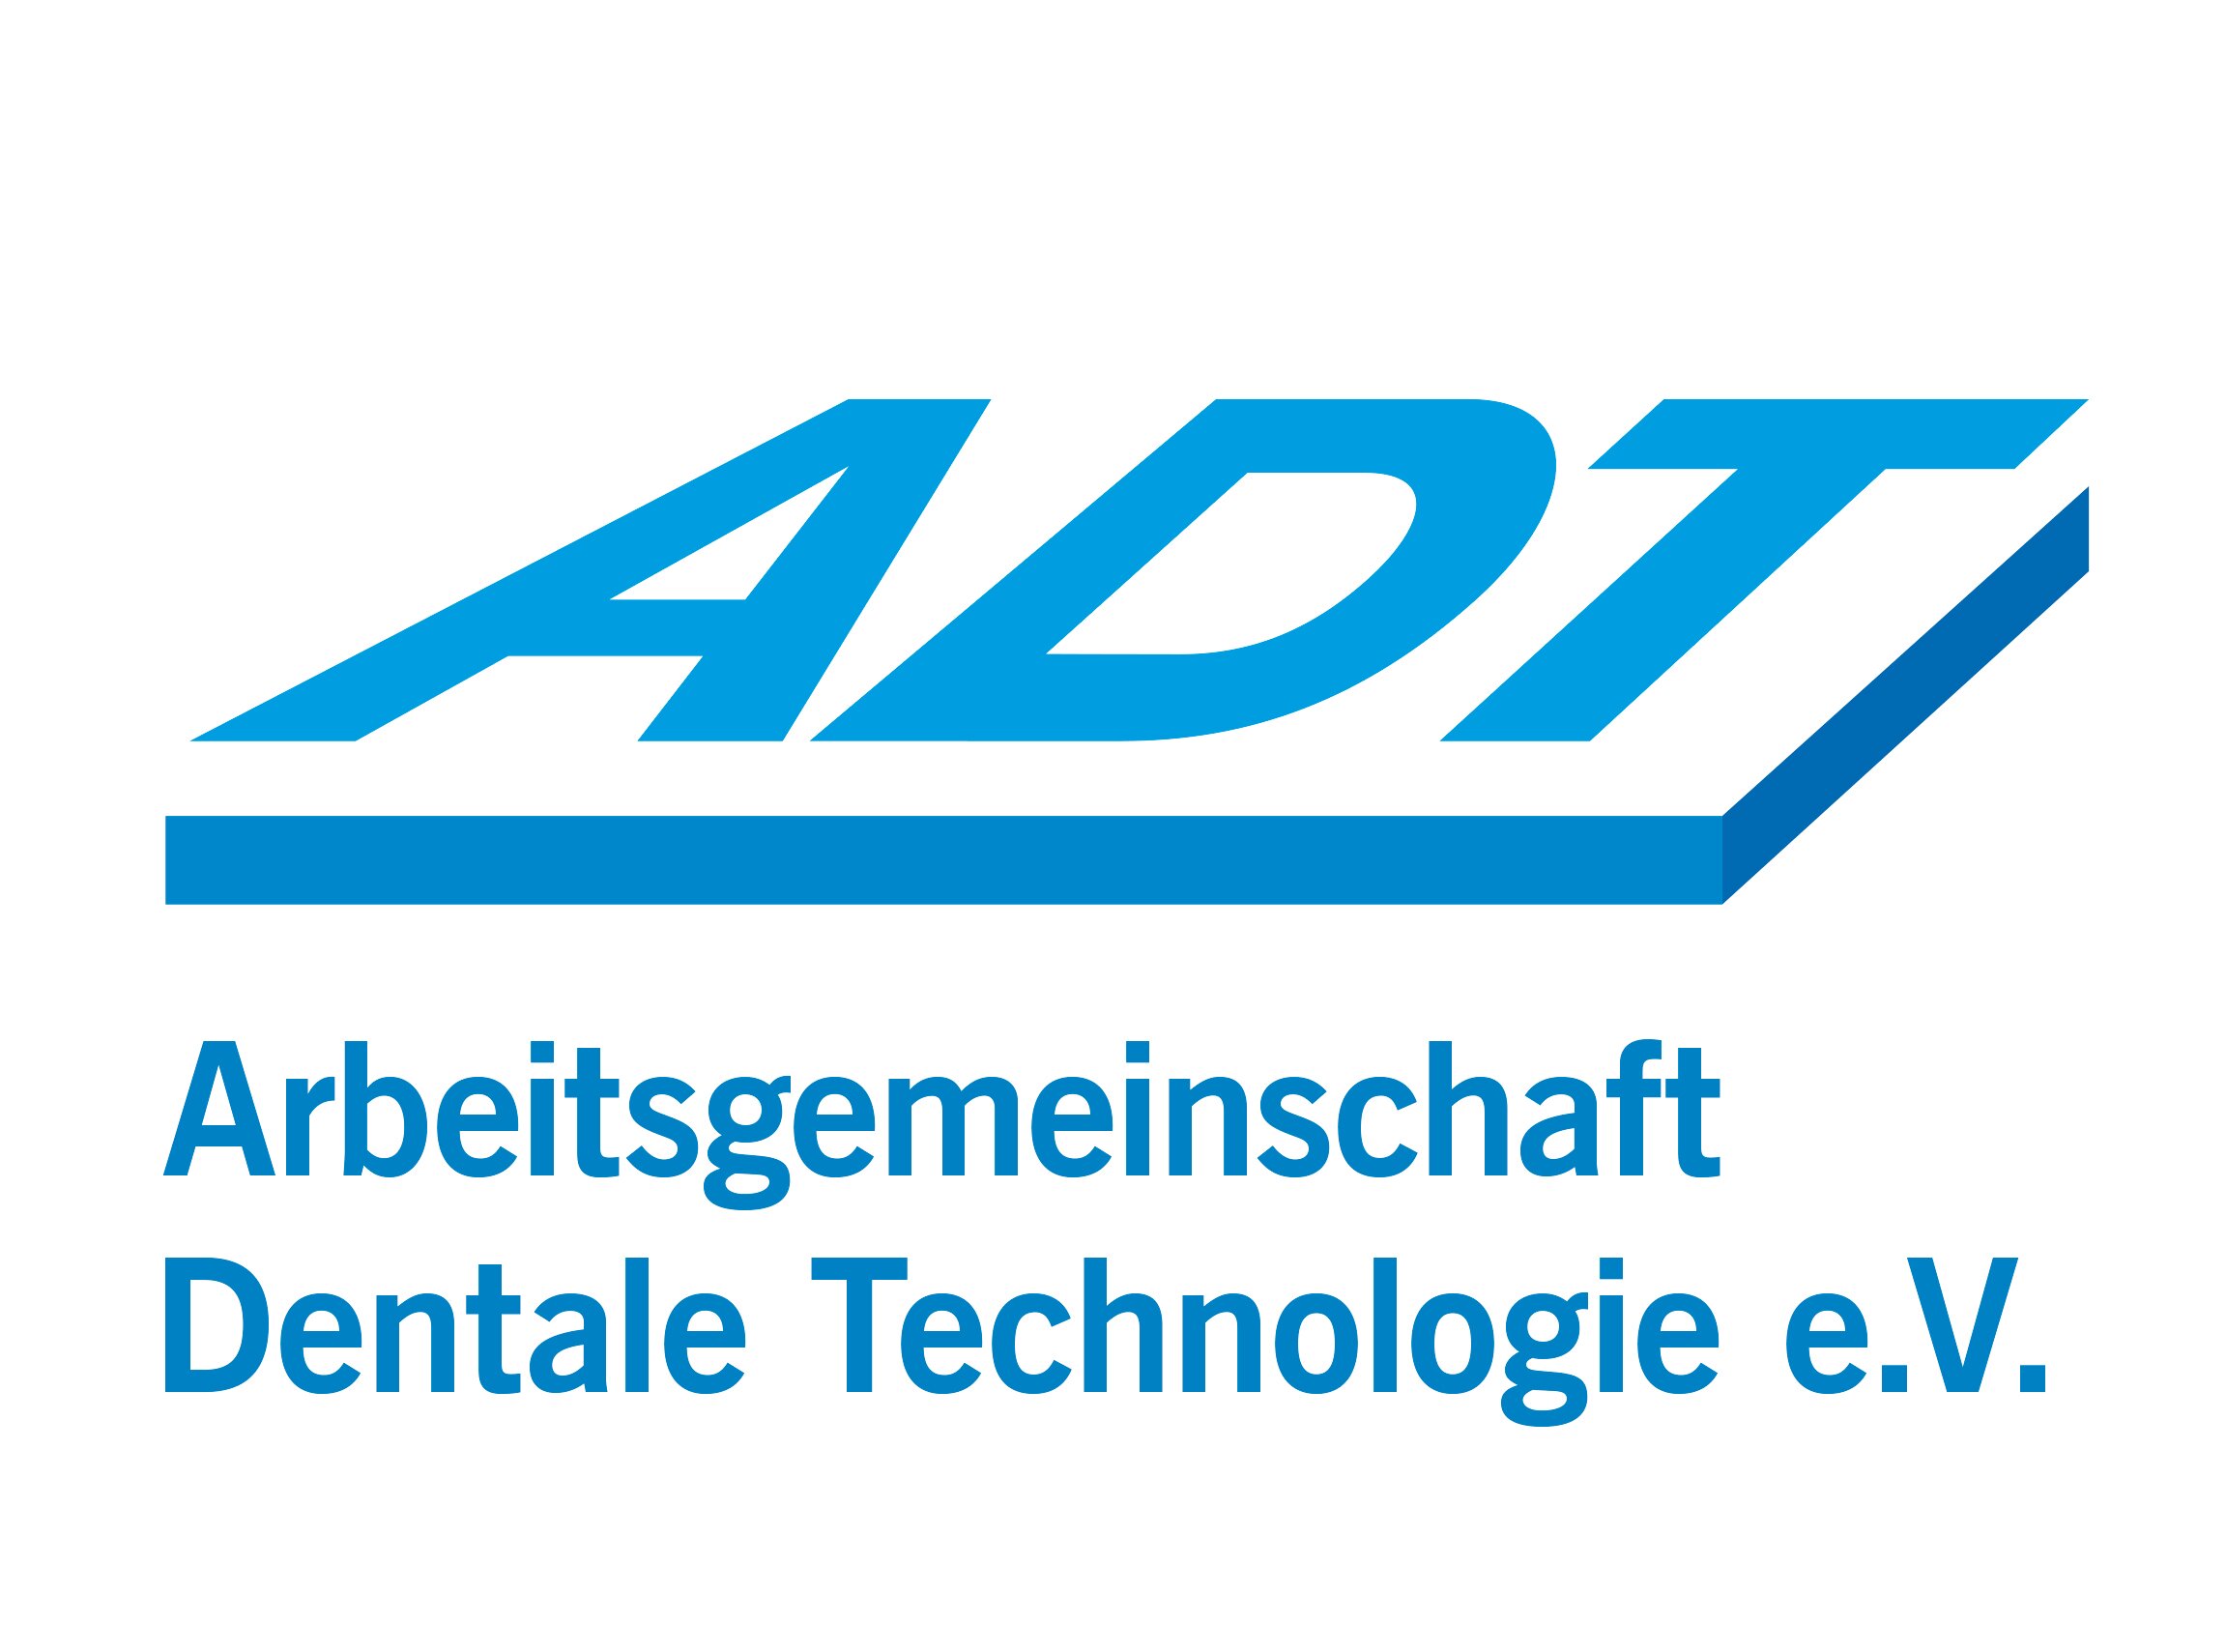 ADT Arbeitsgemeinschaft Dentale Technologie